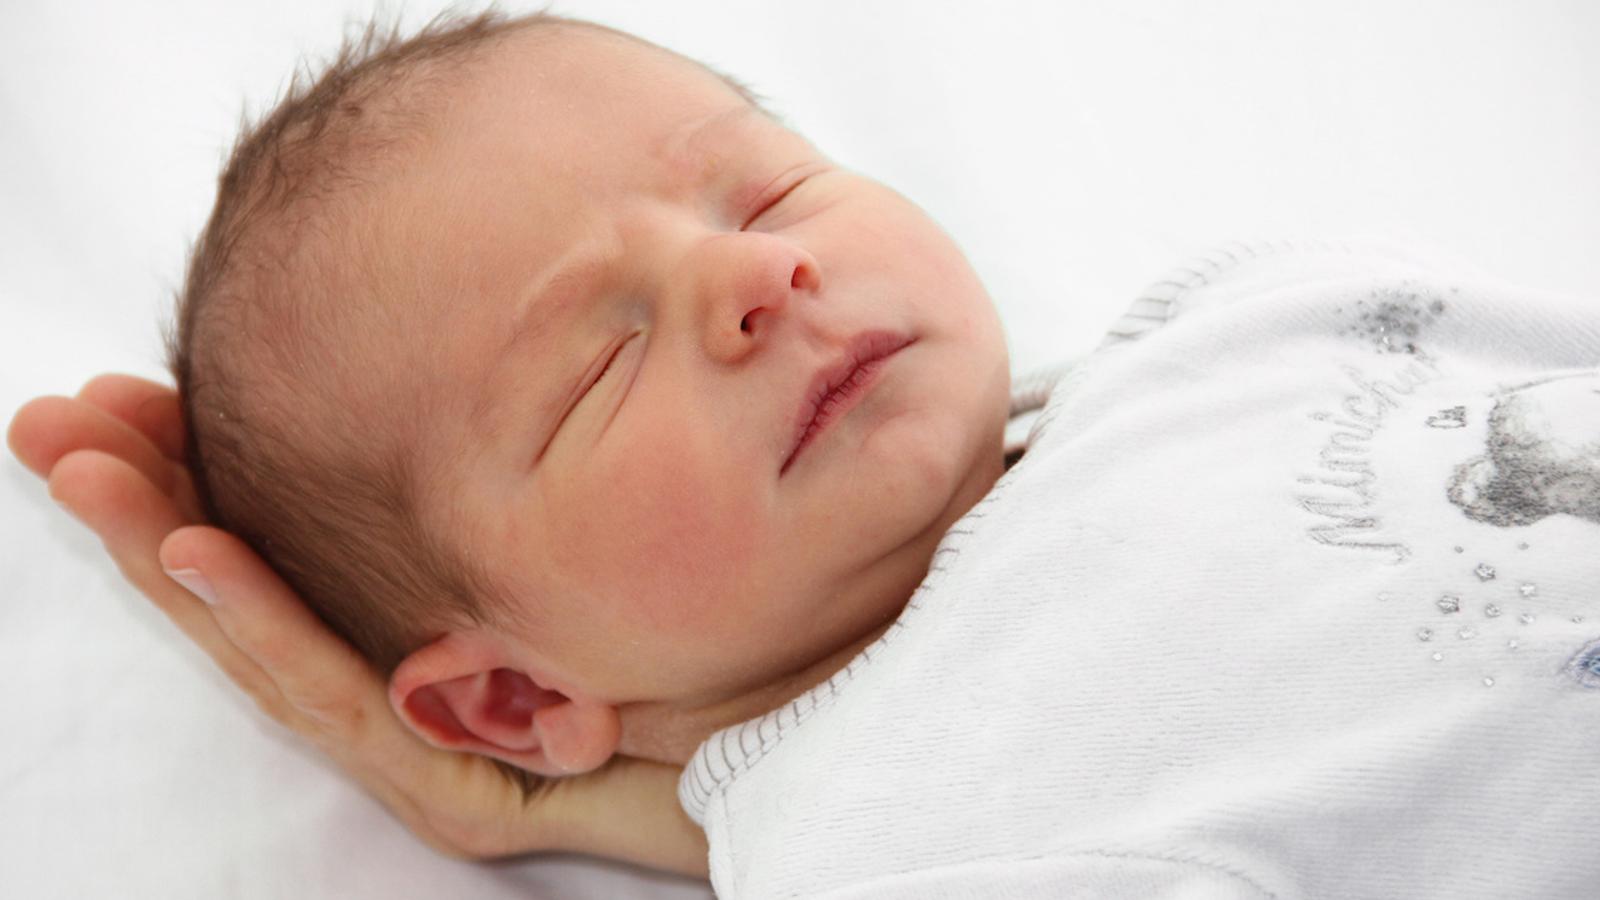 Selon les experts, les bébés devraient dormir dans la chambre des parents pendant leur première année de vie